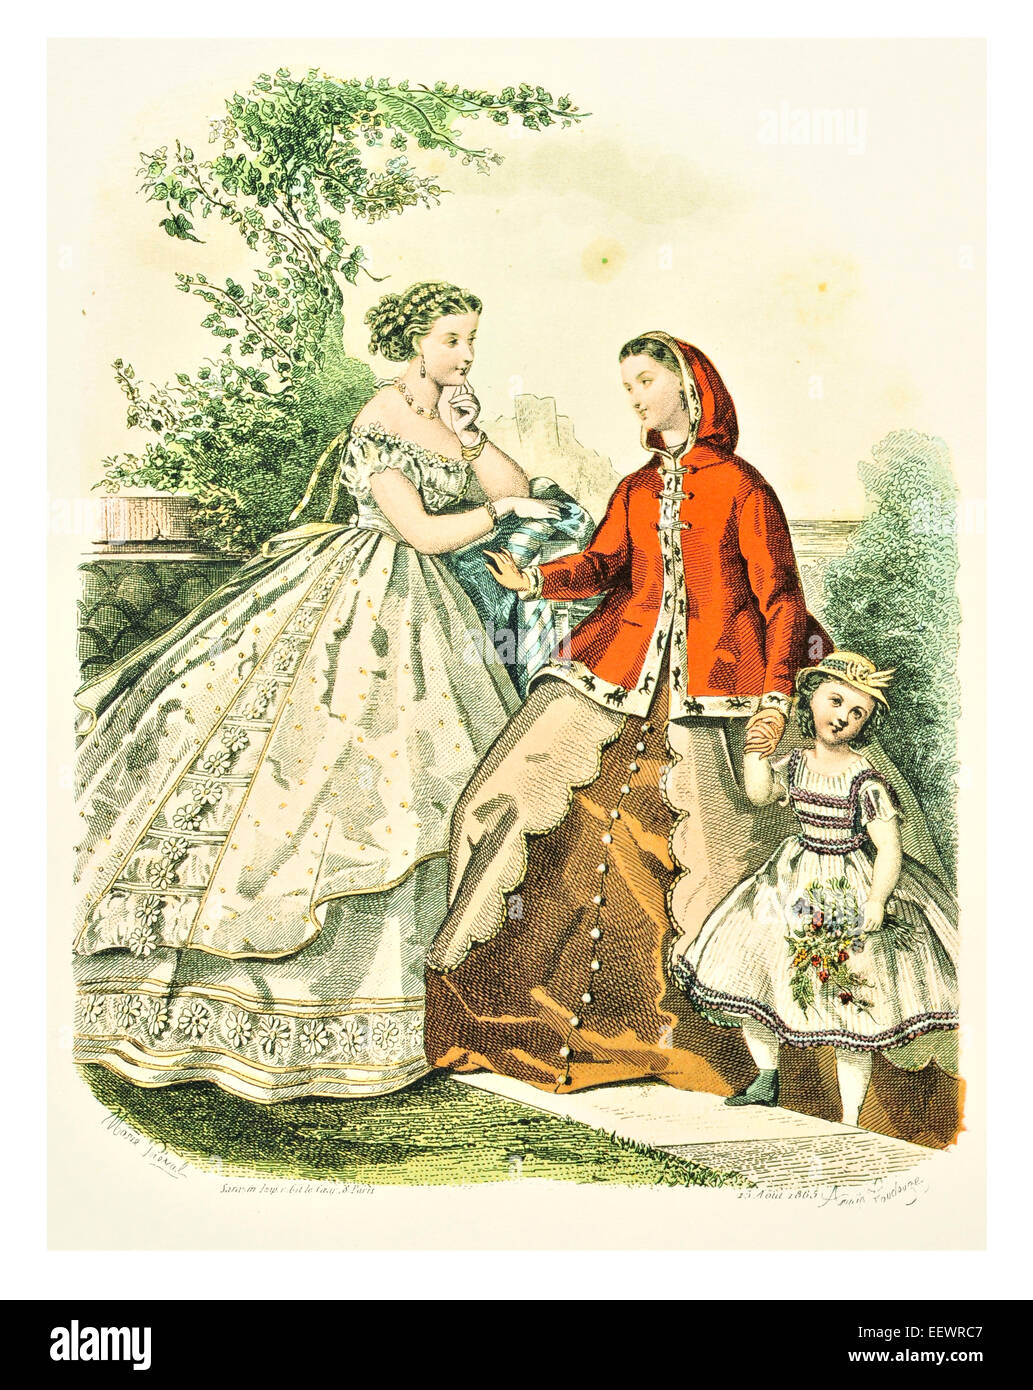 La Mode Illustree 1865 trajes de época victoriana moda vestido vestidos vestido falda velo cuff lujos tapa muselina bordado Foto de stock